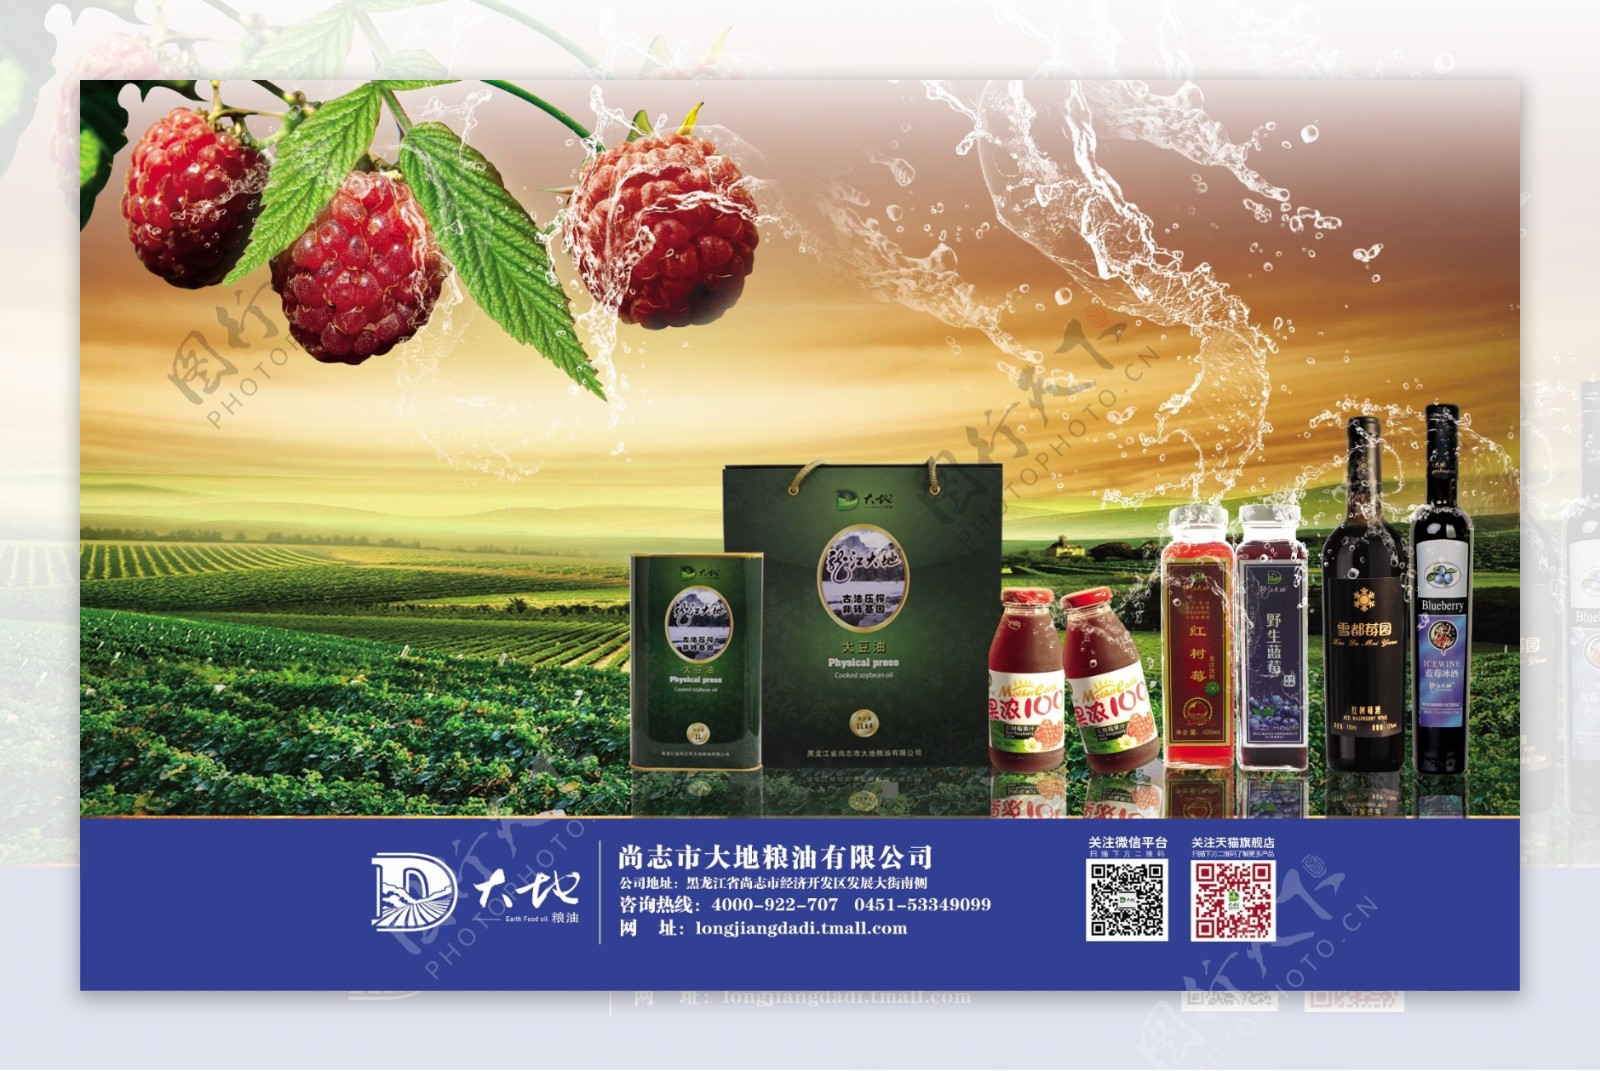 广告海报红树莓覆盆子酒豆油